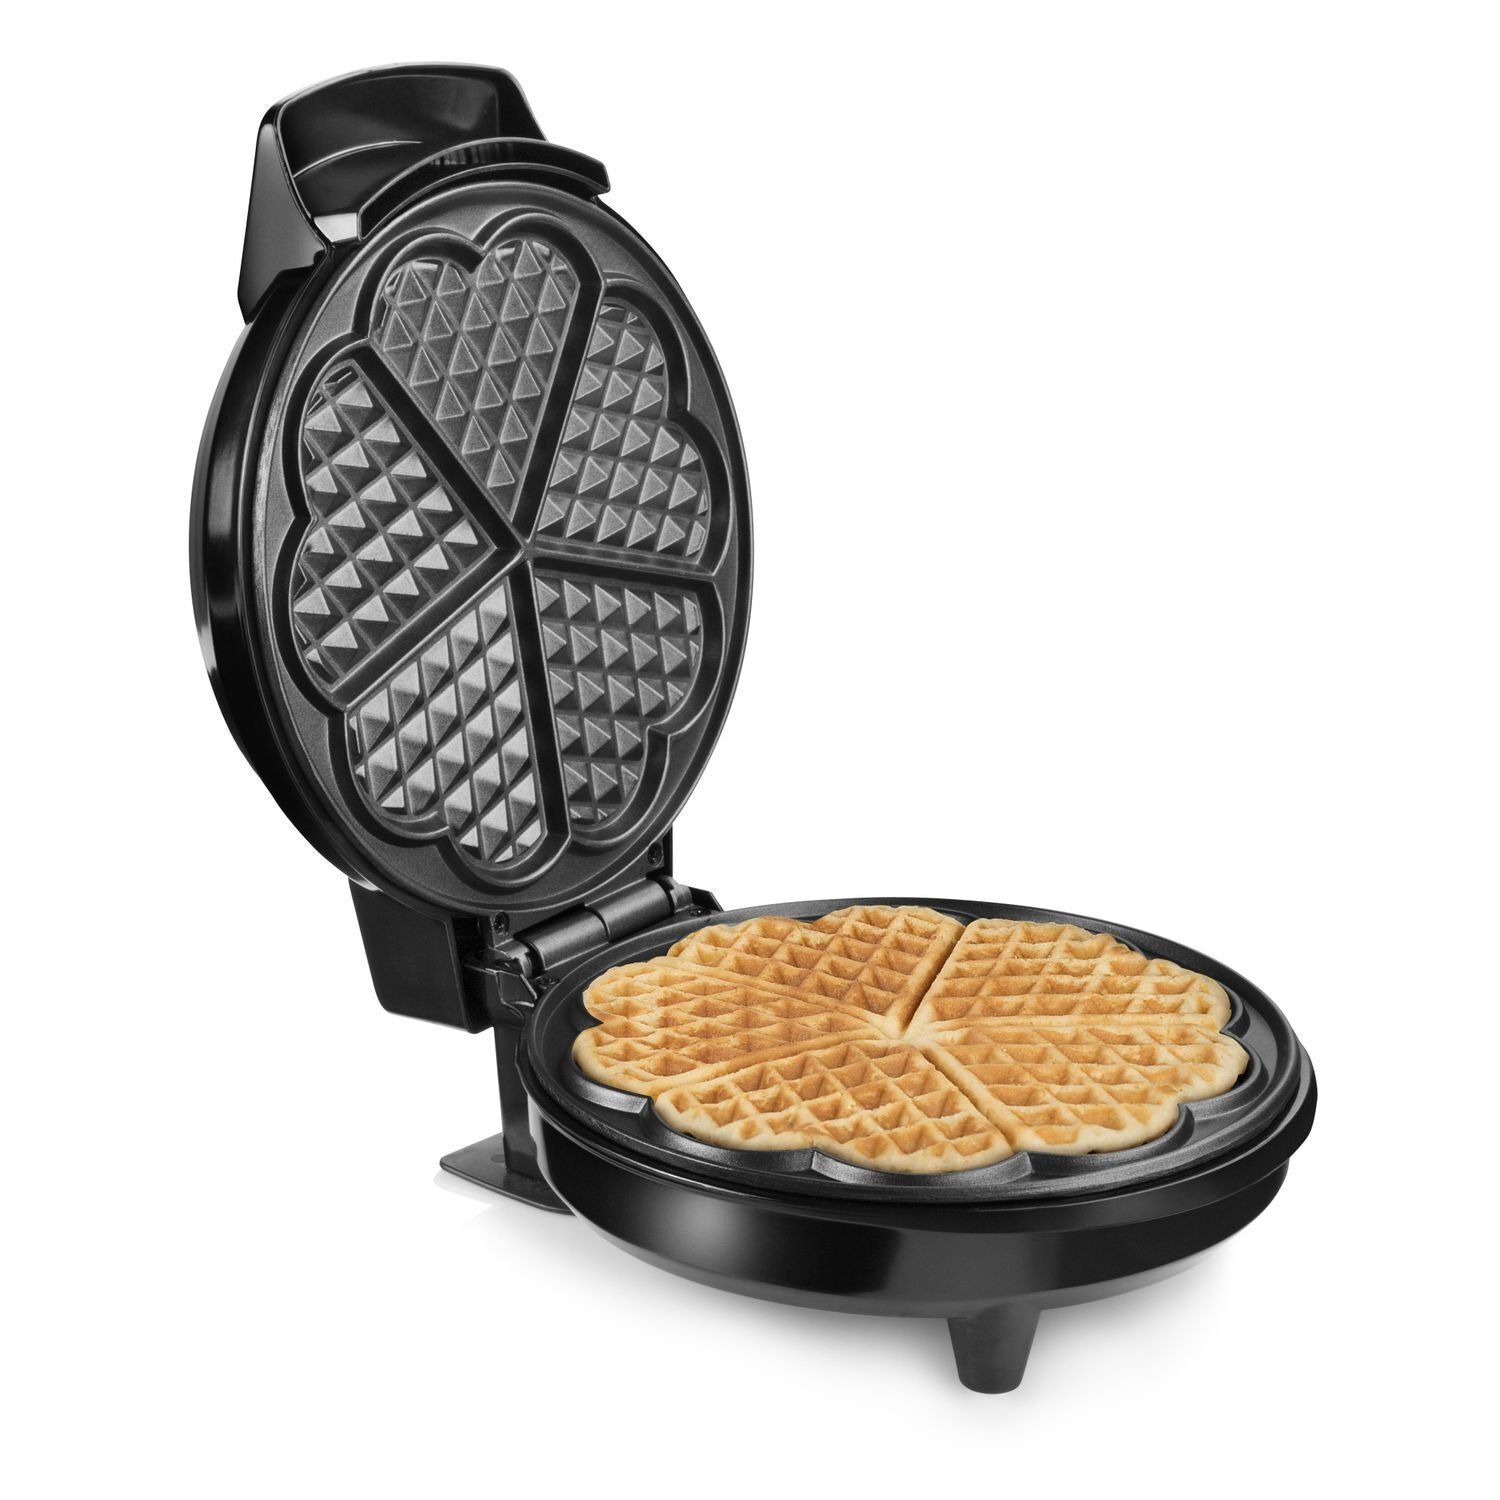 Maquina Wafflera Para Waffles Hg-233 1000w